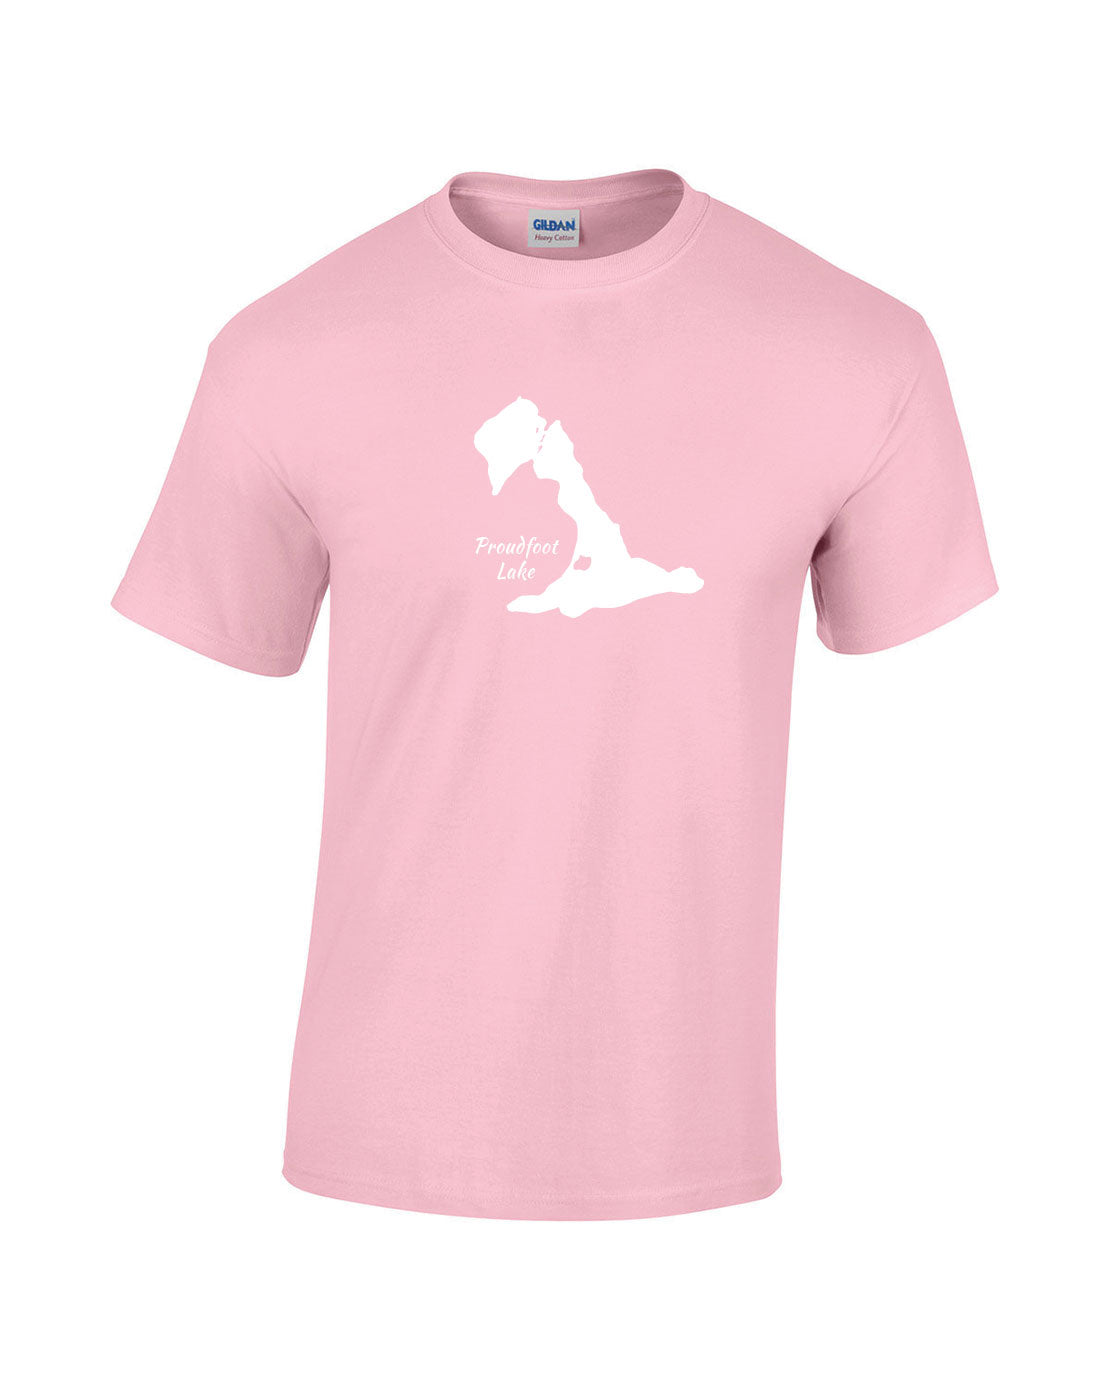 Proudfoot Lake T-Shirt